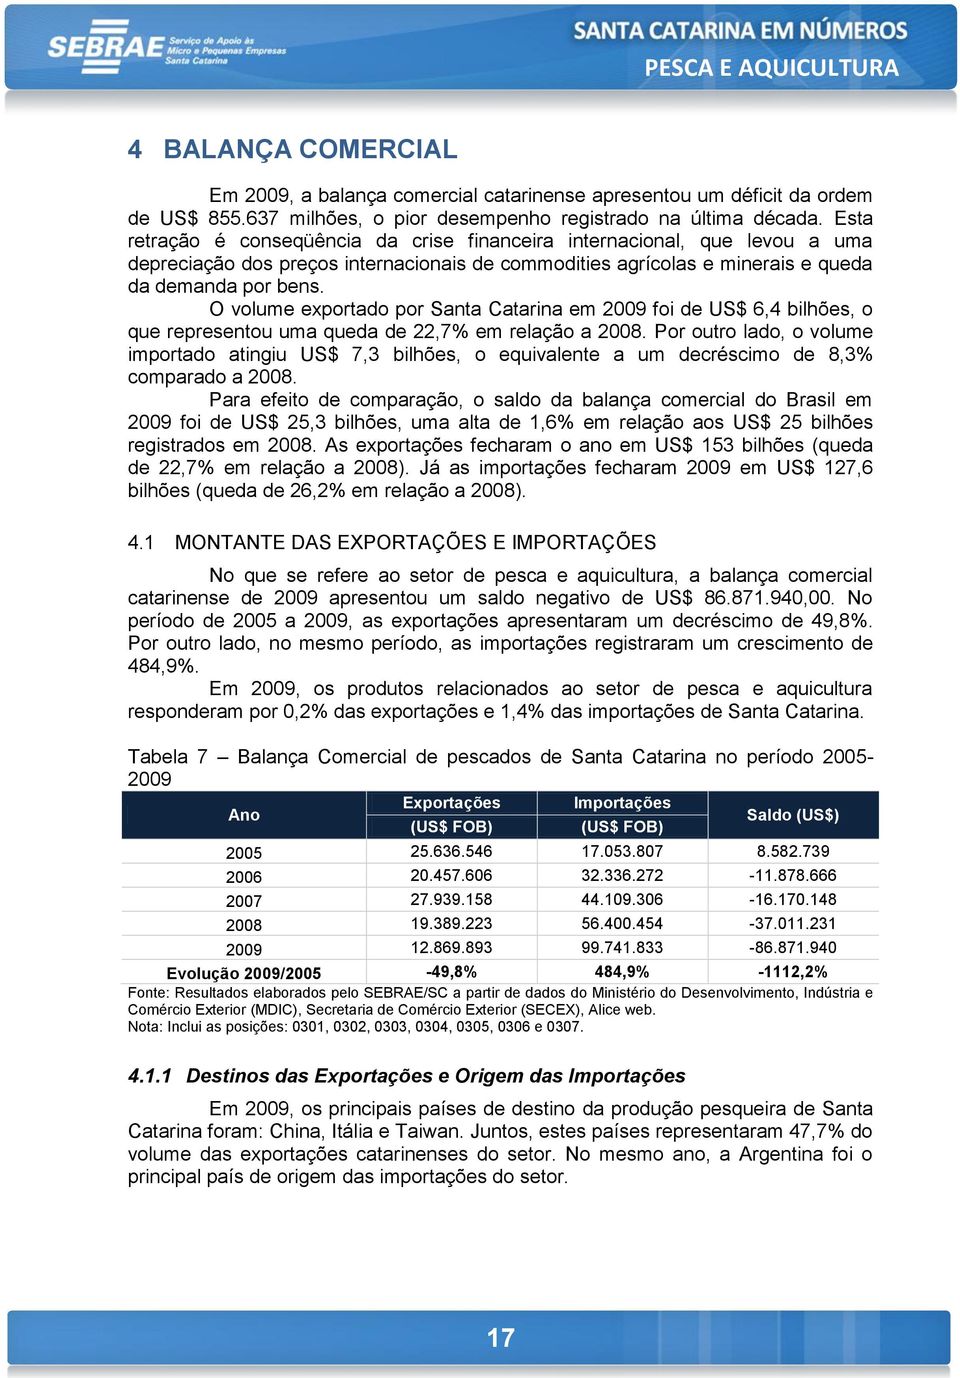 O volume exportado por Santa Catarina em 2009 foi de US$ 6,4 bilhões, o que representou uma queda de 22,7% em relação a 2008.